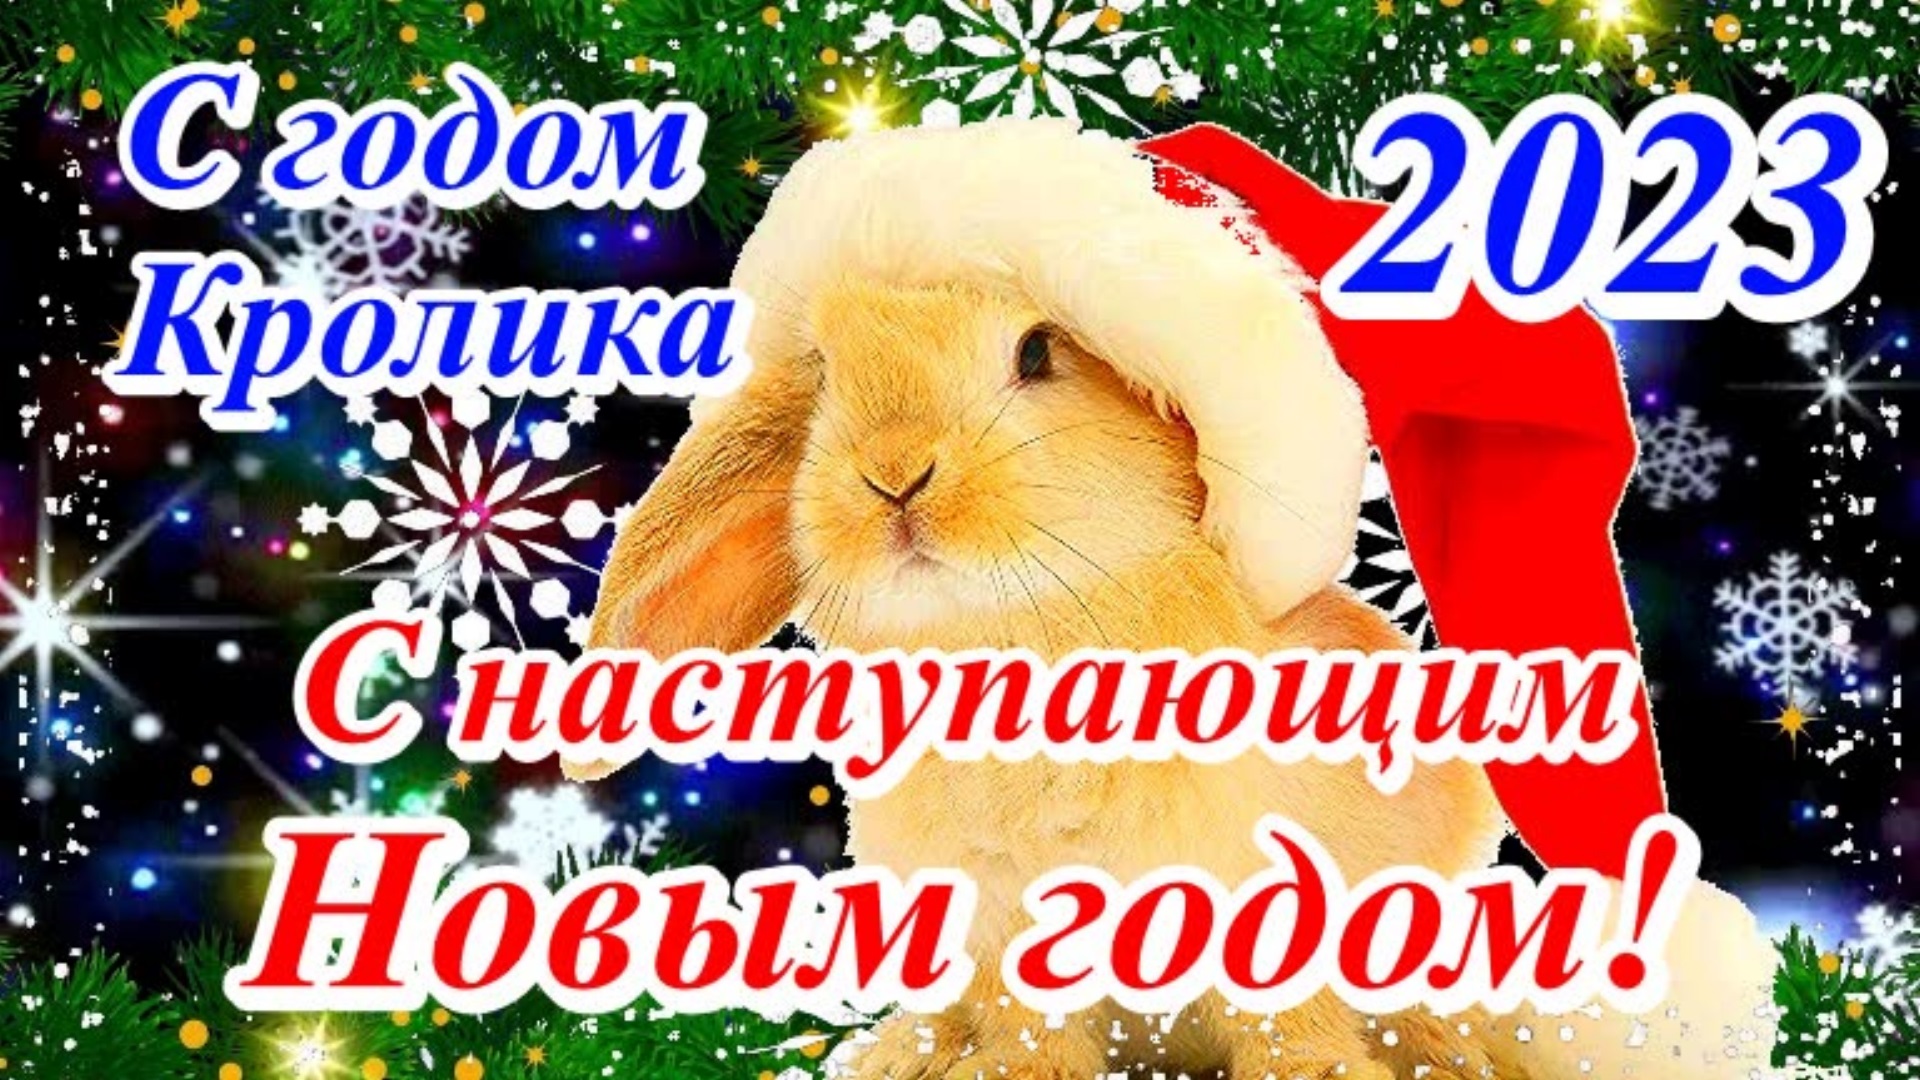 31 декабря видео. Поздравления с наступающим новым годом. С наступающим годом кролика. Поздравляю с наступающим новым годом кролика. Красивые поздравления с наступающим годом кролика.